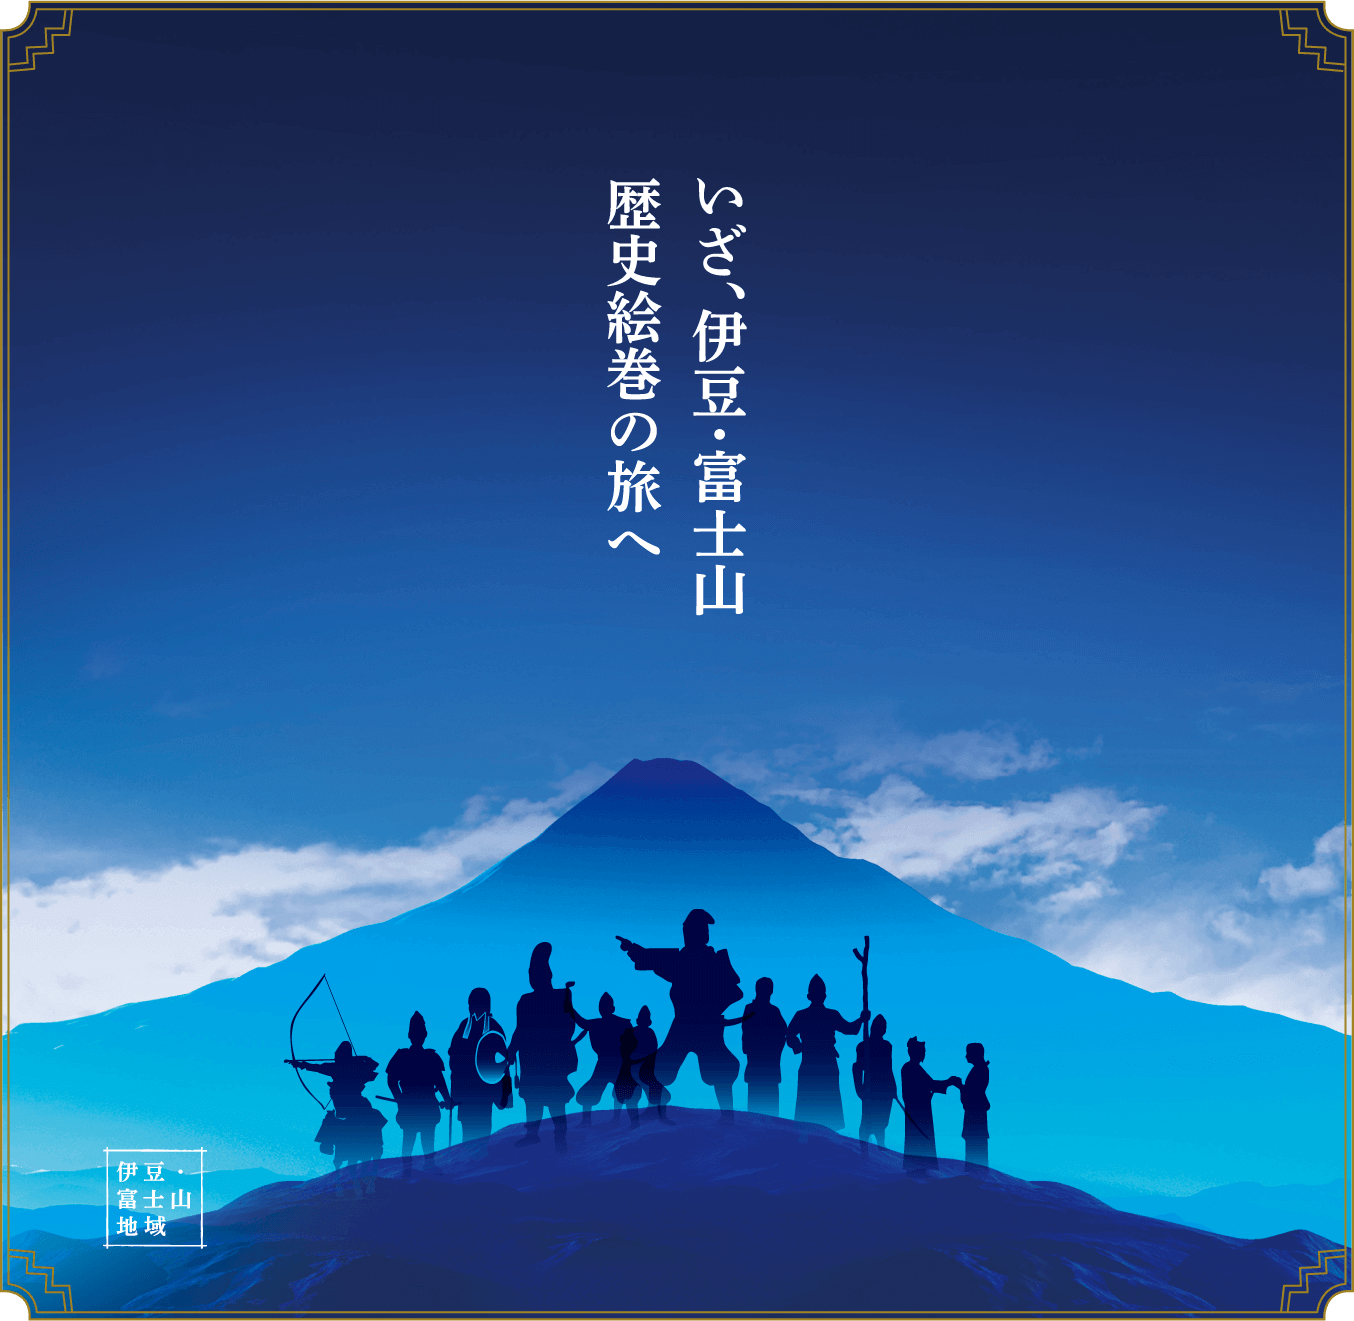 いざ、伊豆・富士山 歴史絵巻の旅へ